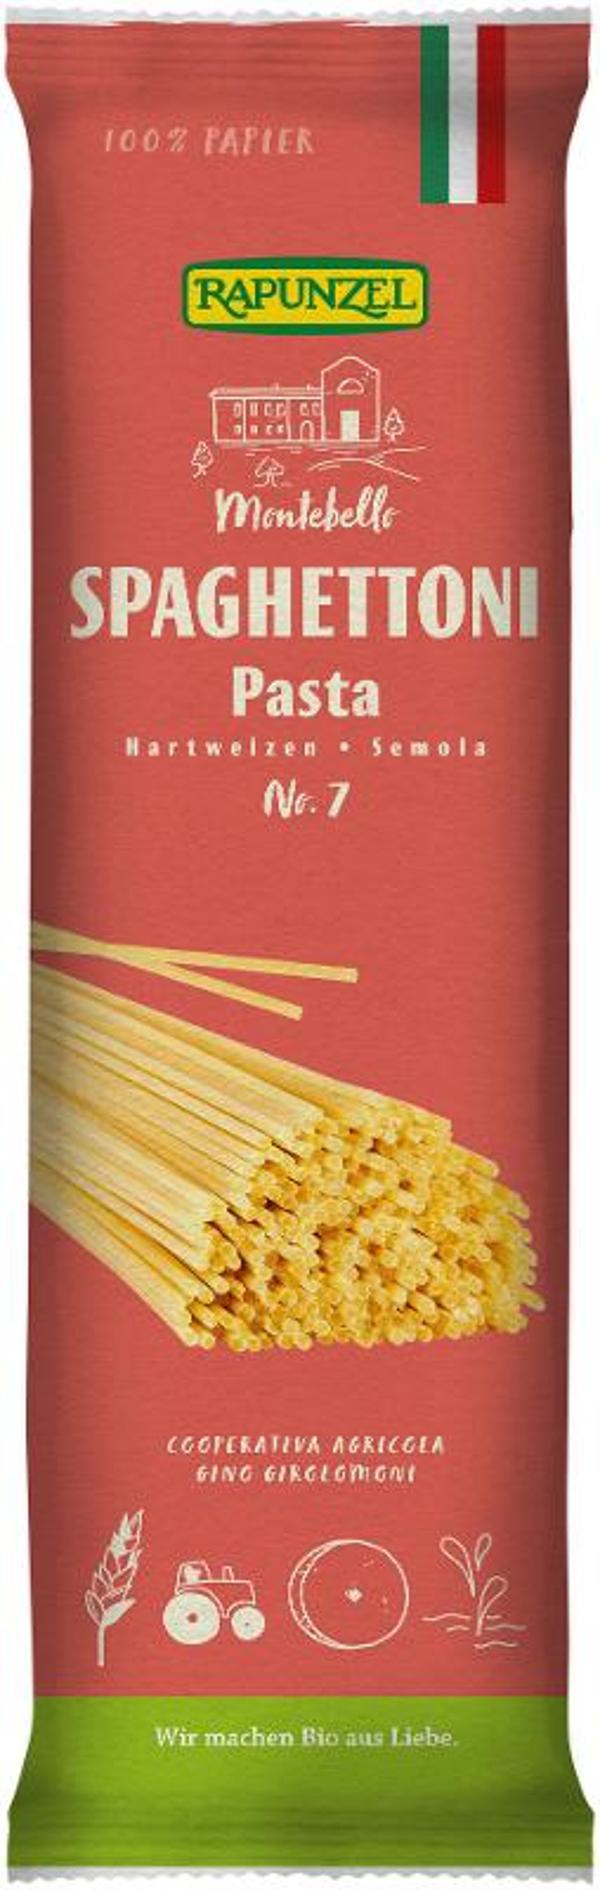 Produktfoto zu Spaghettoni Semola no.7, 500 g